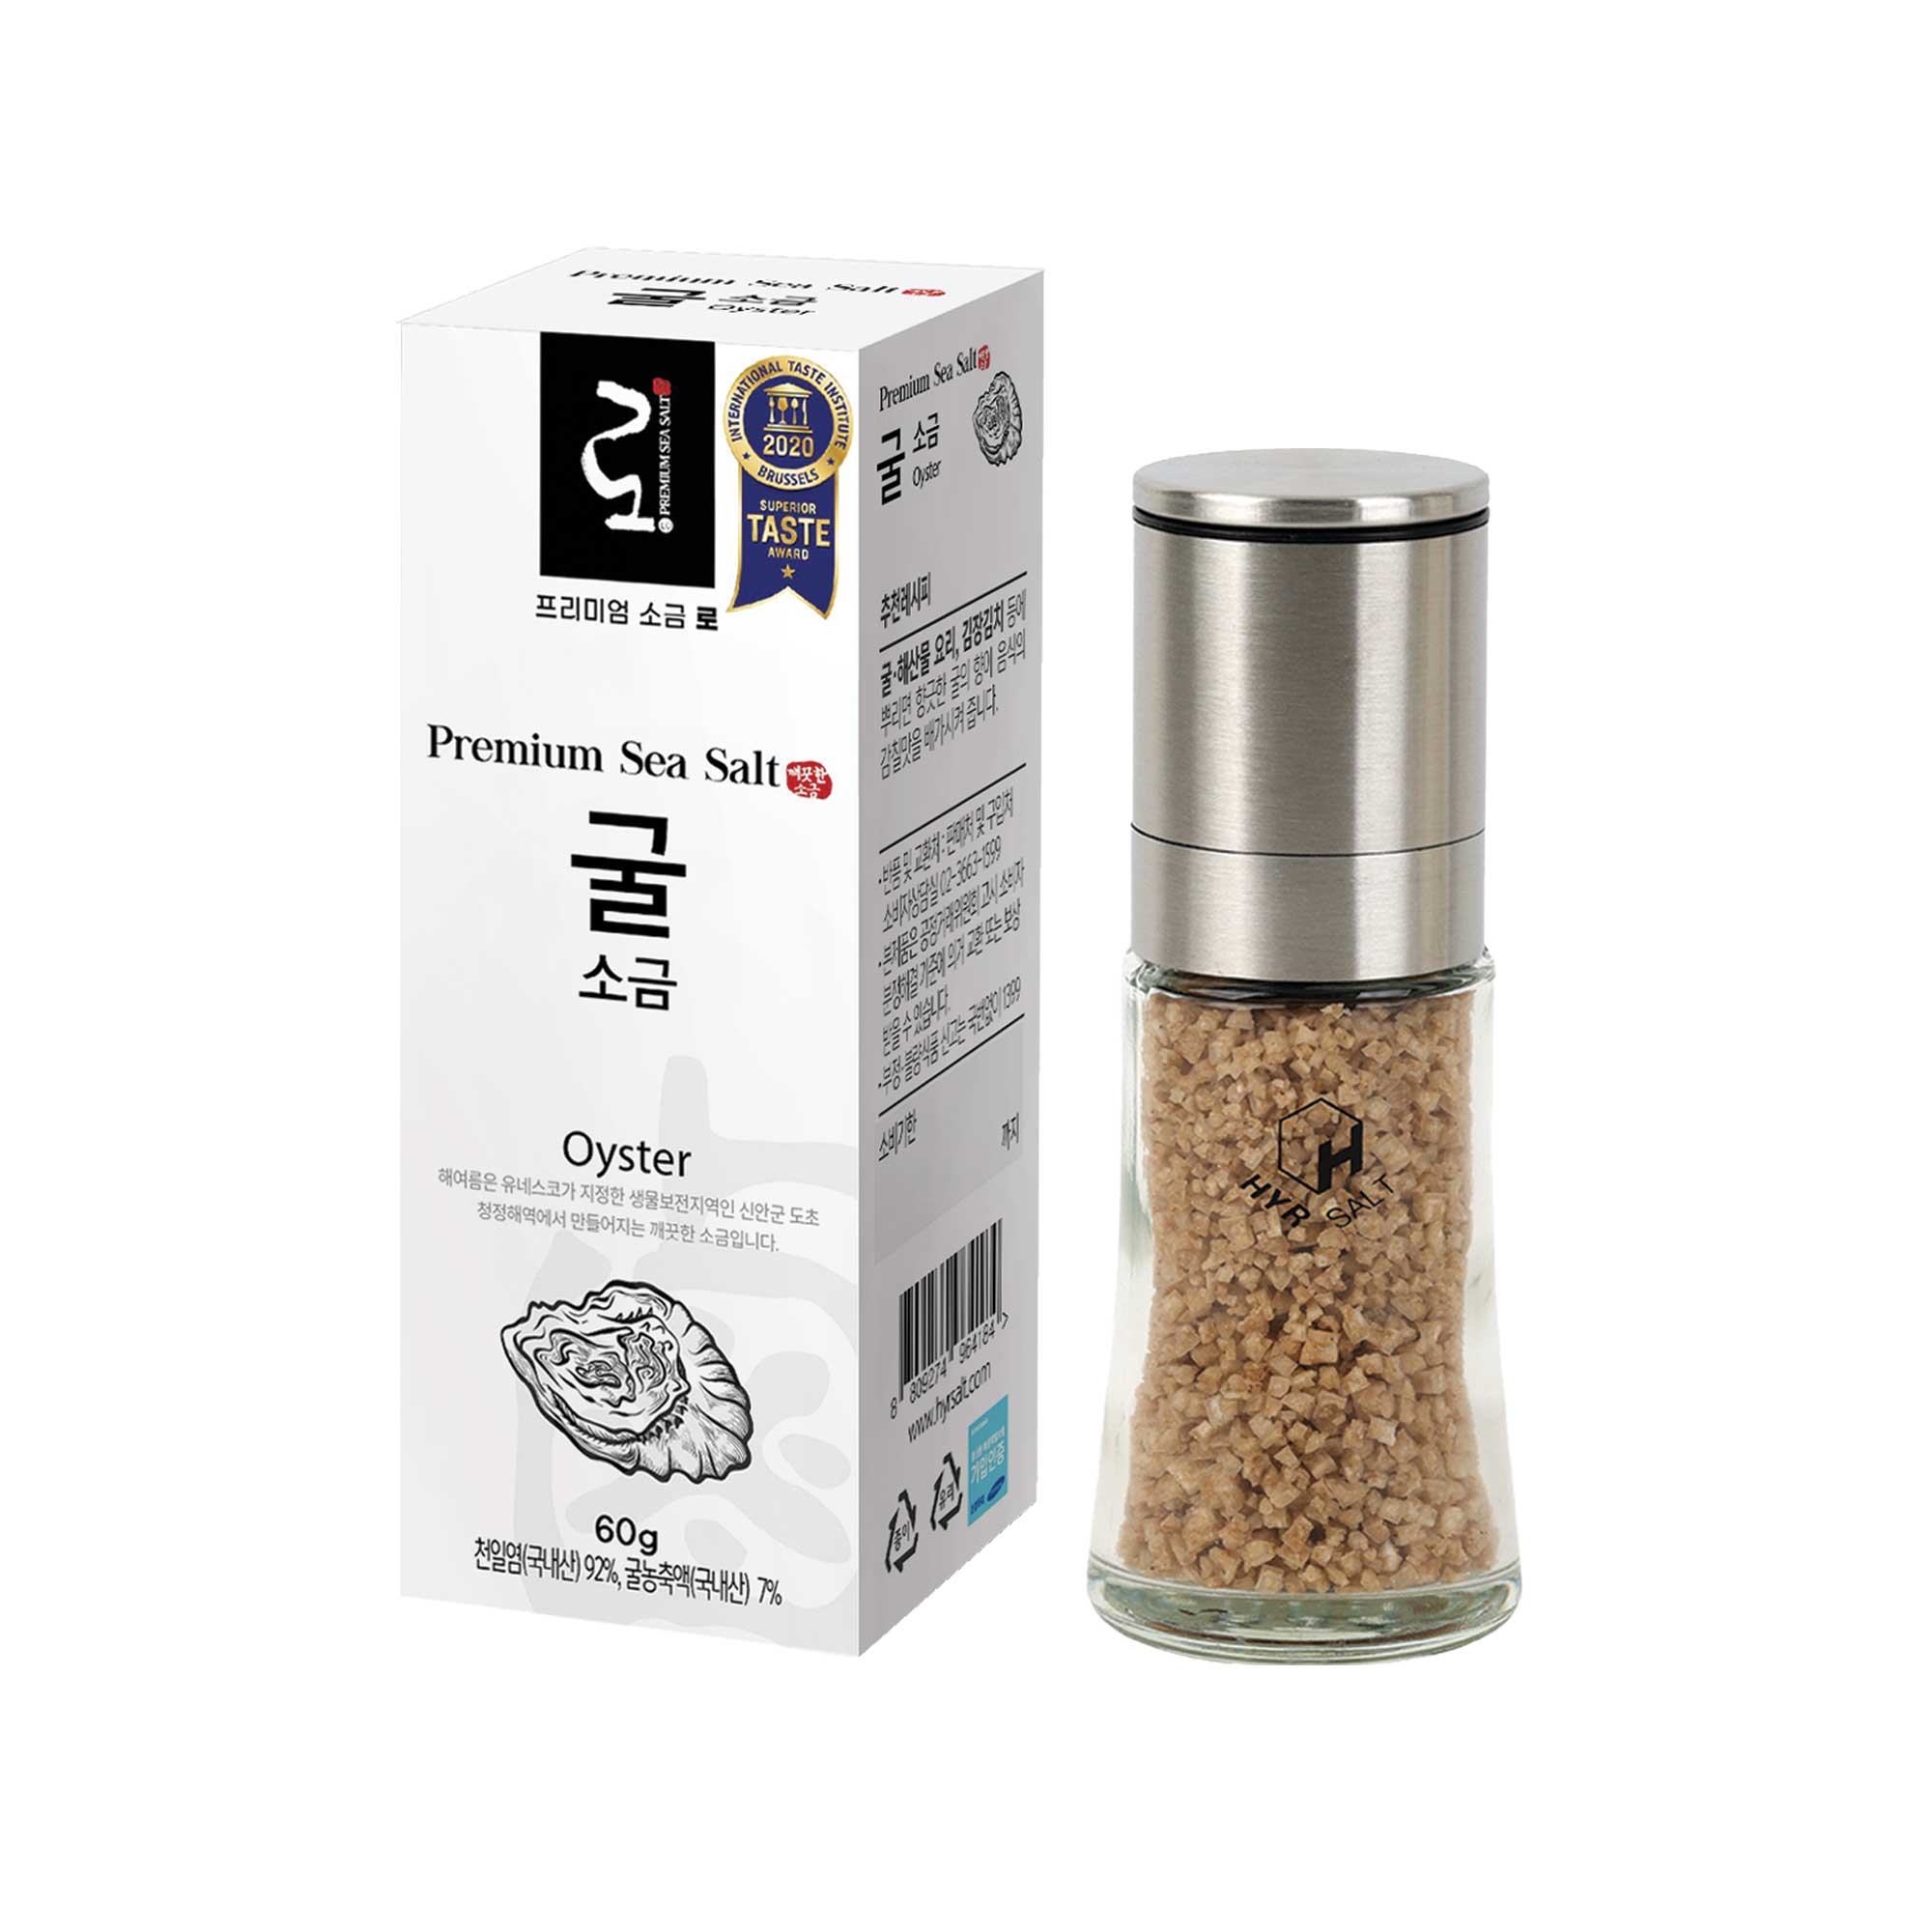 Premium Sea Salt 'Lo' 优质天日盐 ‘卤’